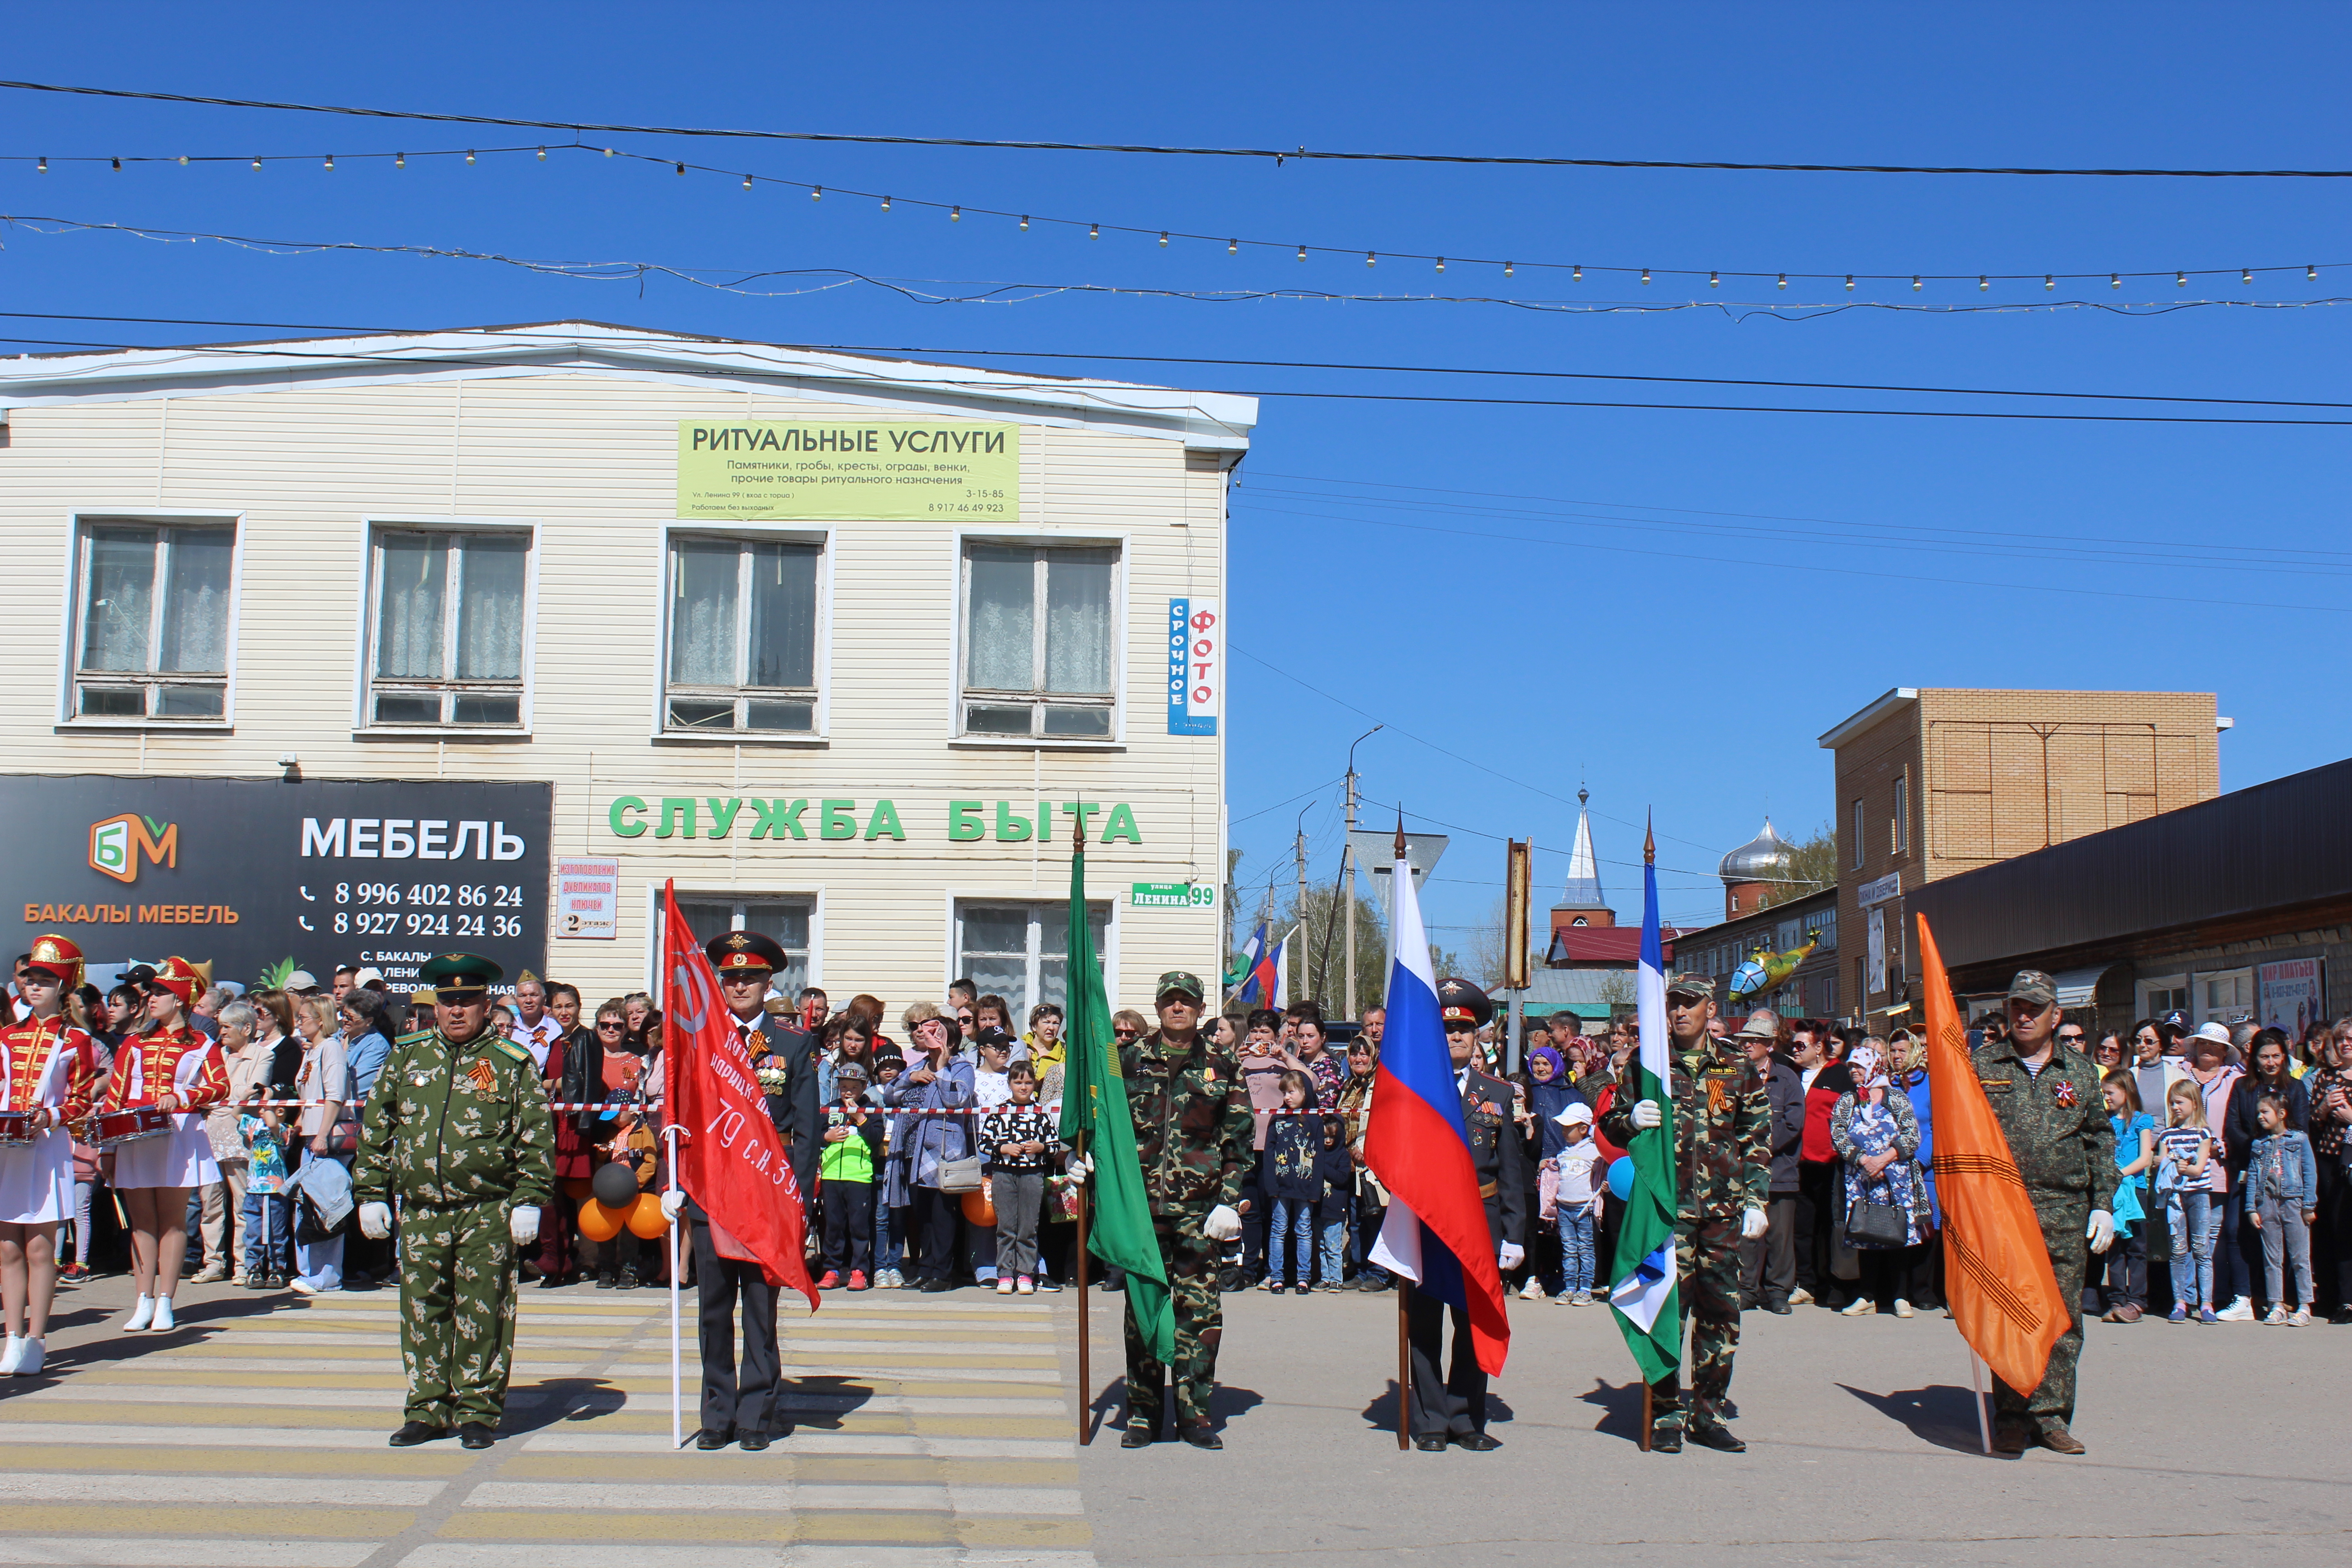 В руках знаменной группы - Государственные флаги и Знамя Победы